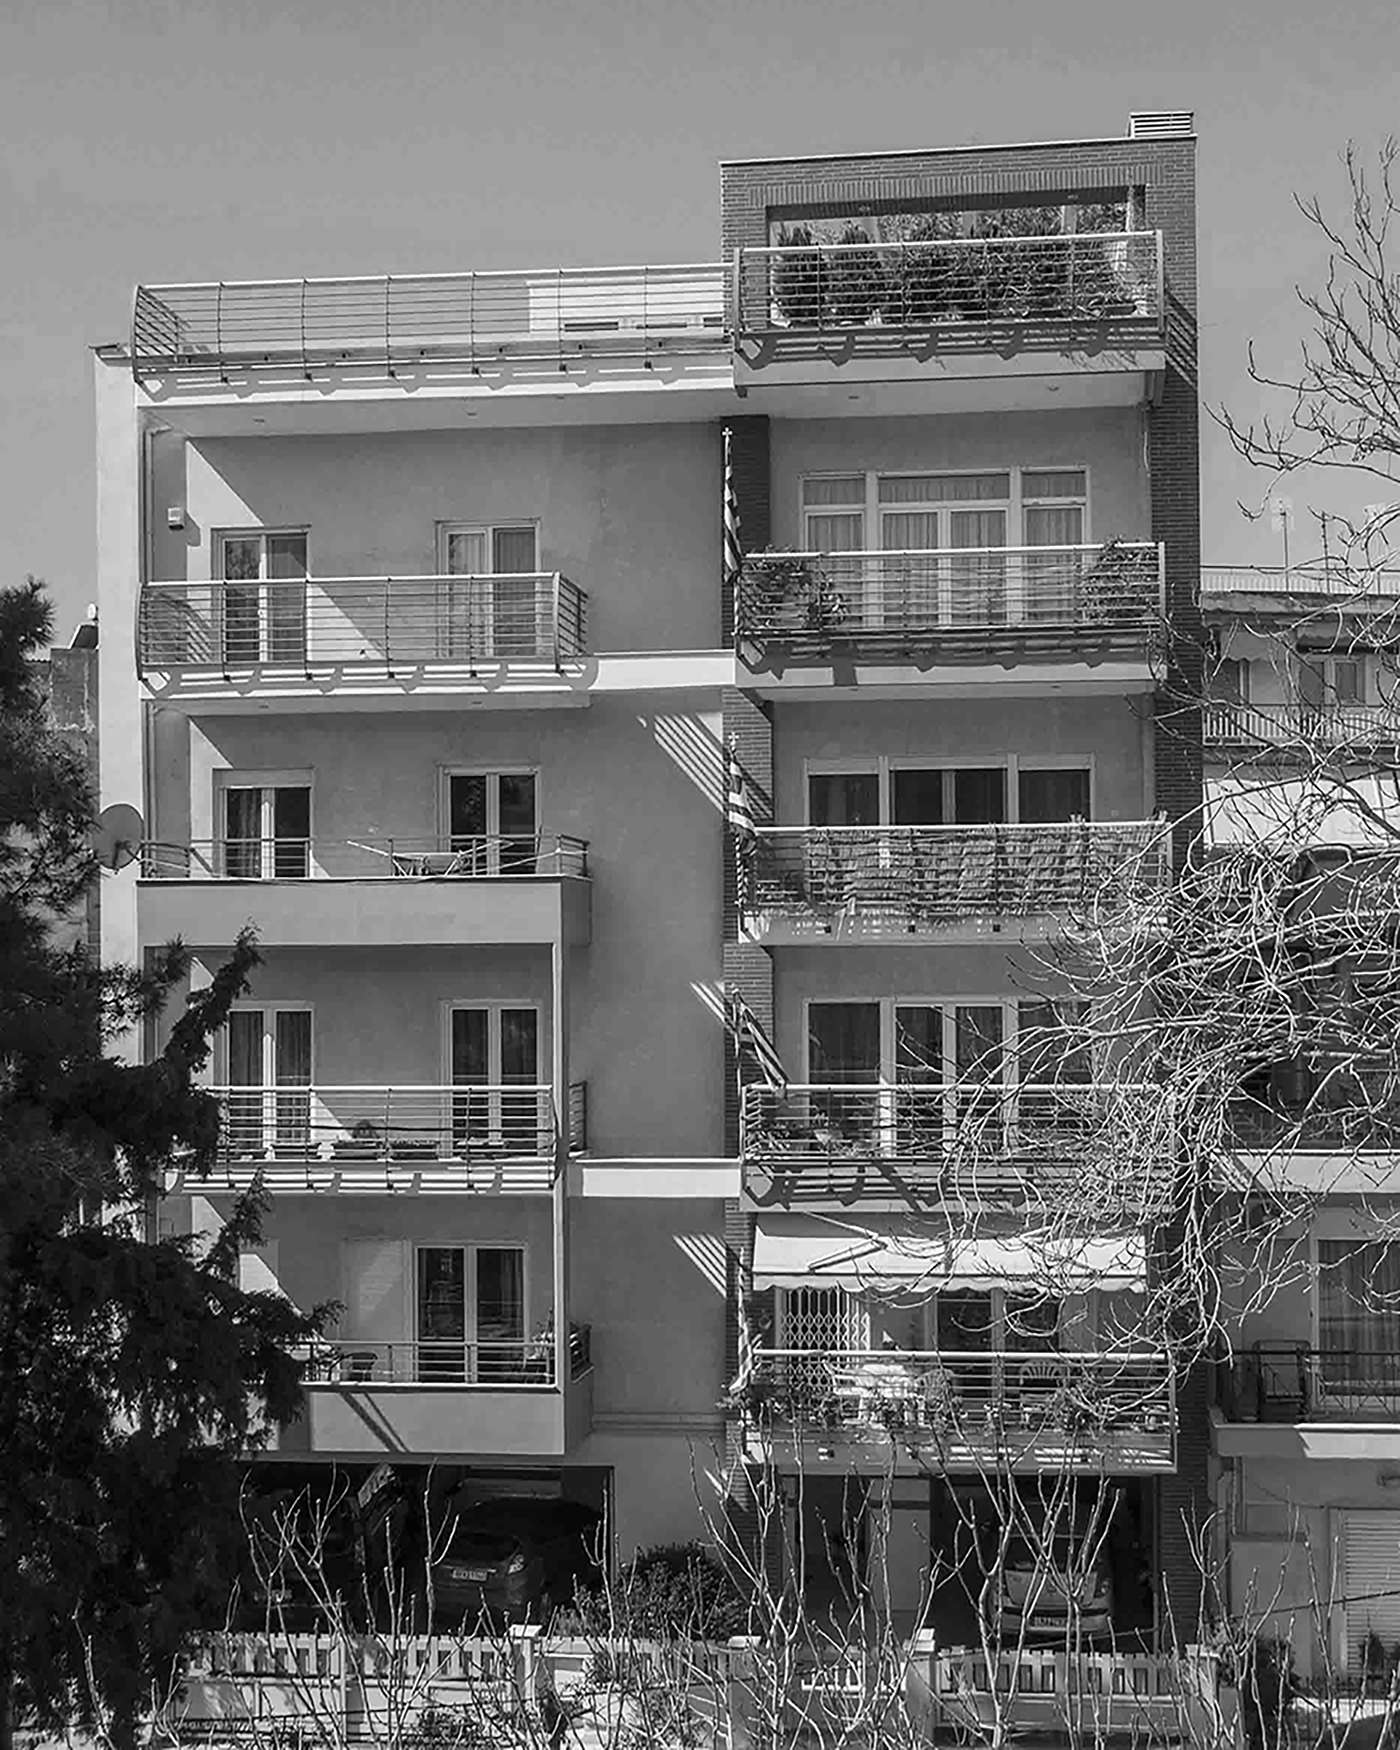 Πολυκατοικία στην Σταυρούπολη Θεσσαλονίκης (2010)